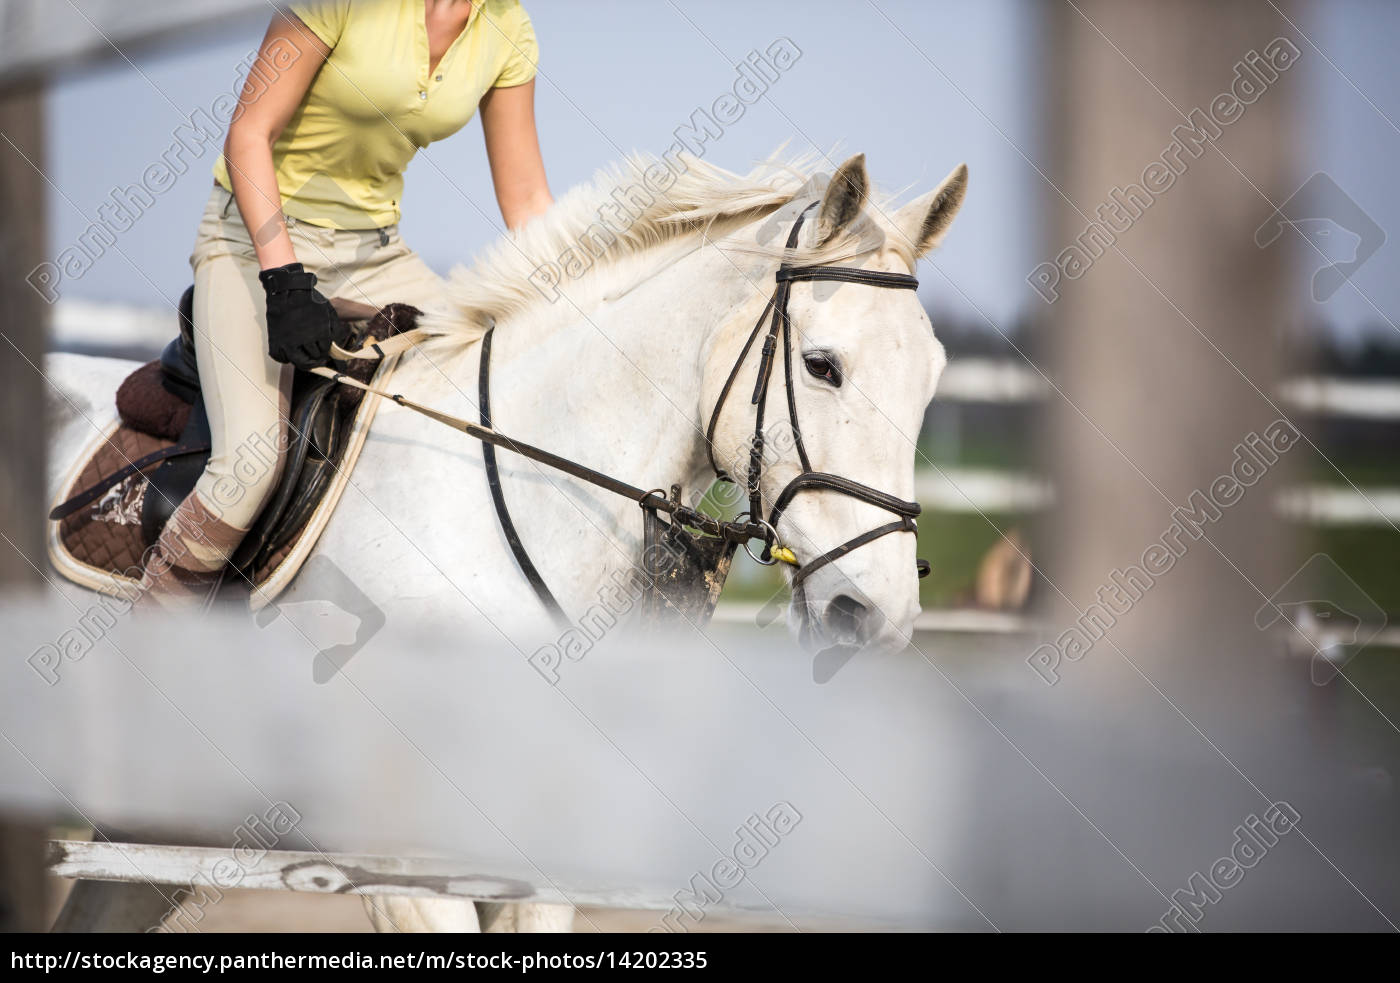 Foto Cavalo pulando sobre obstáculo – Imagem de Cavalo grátis no